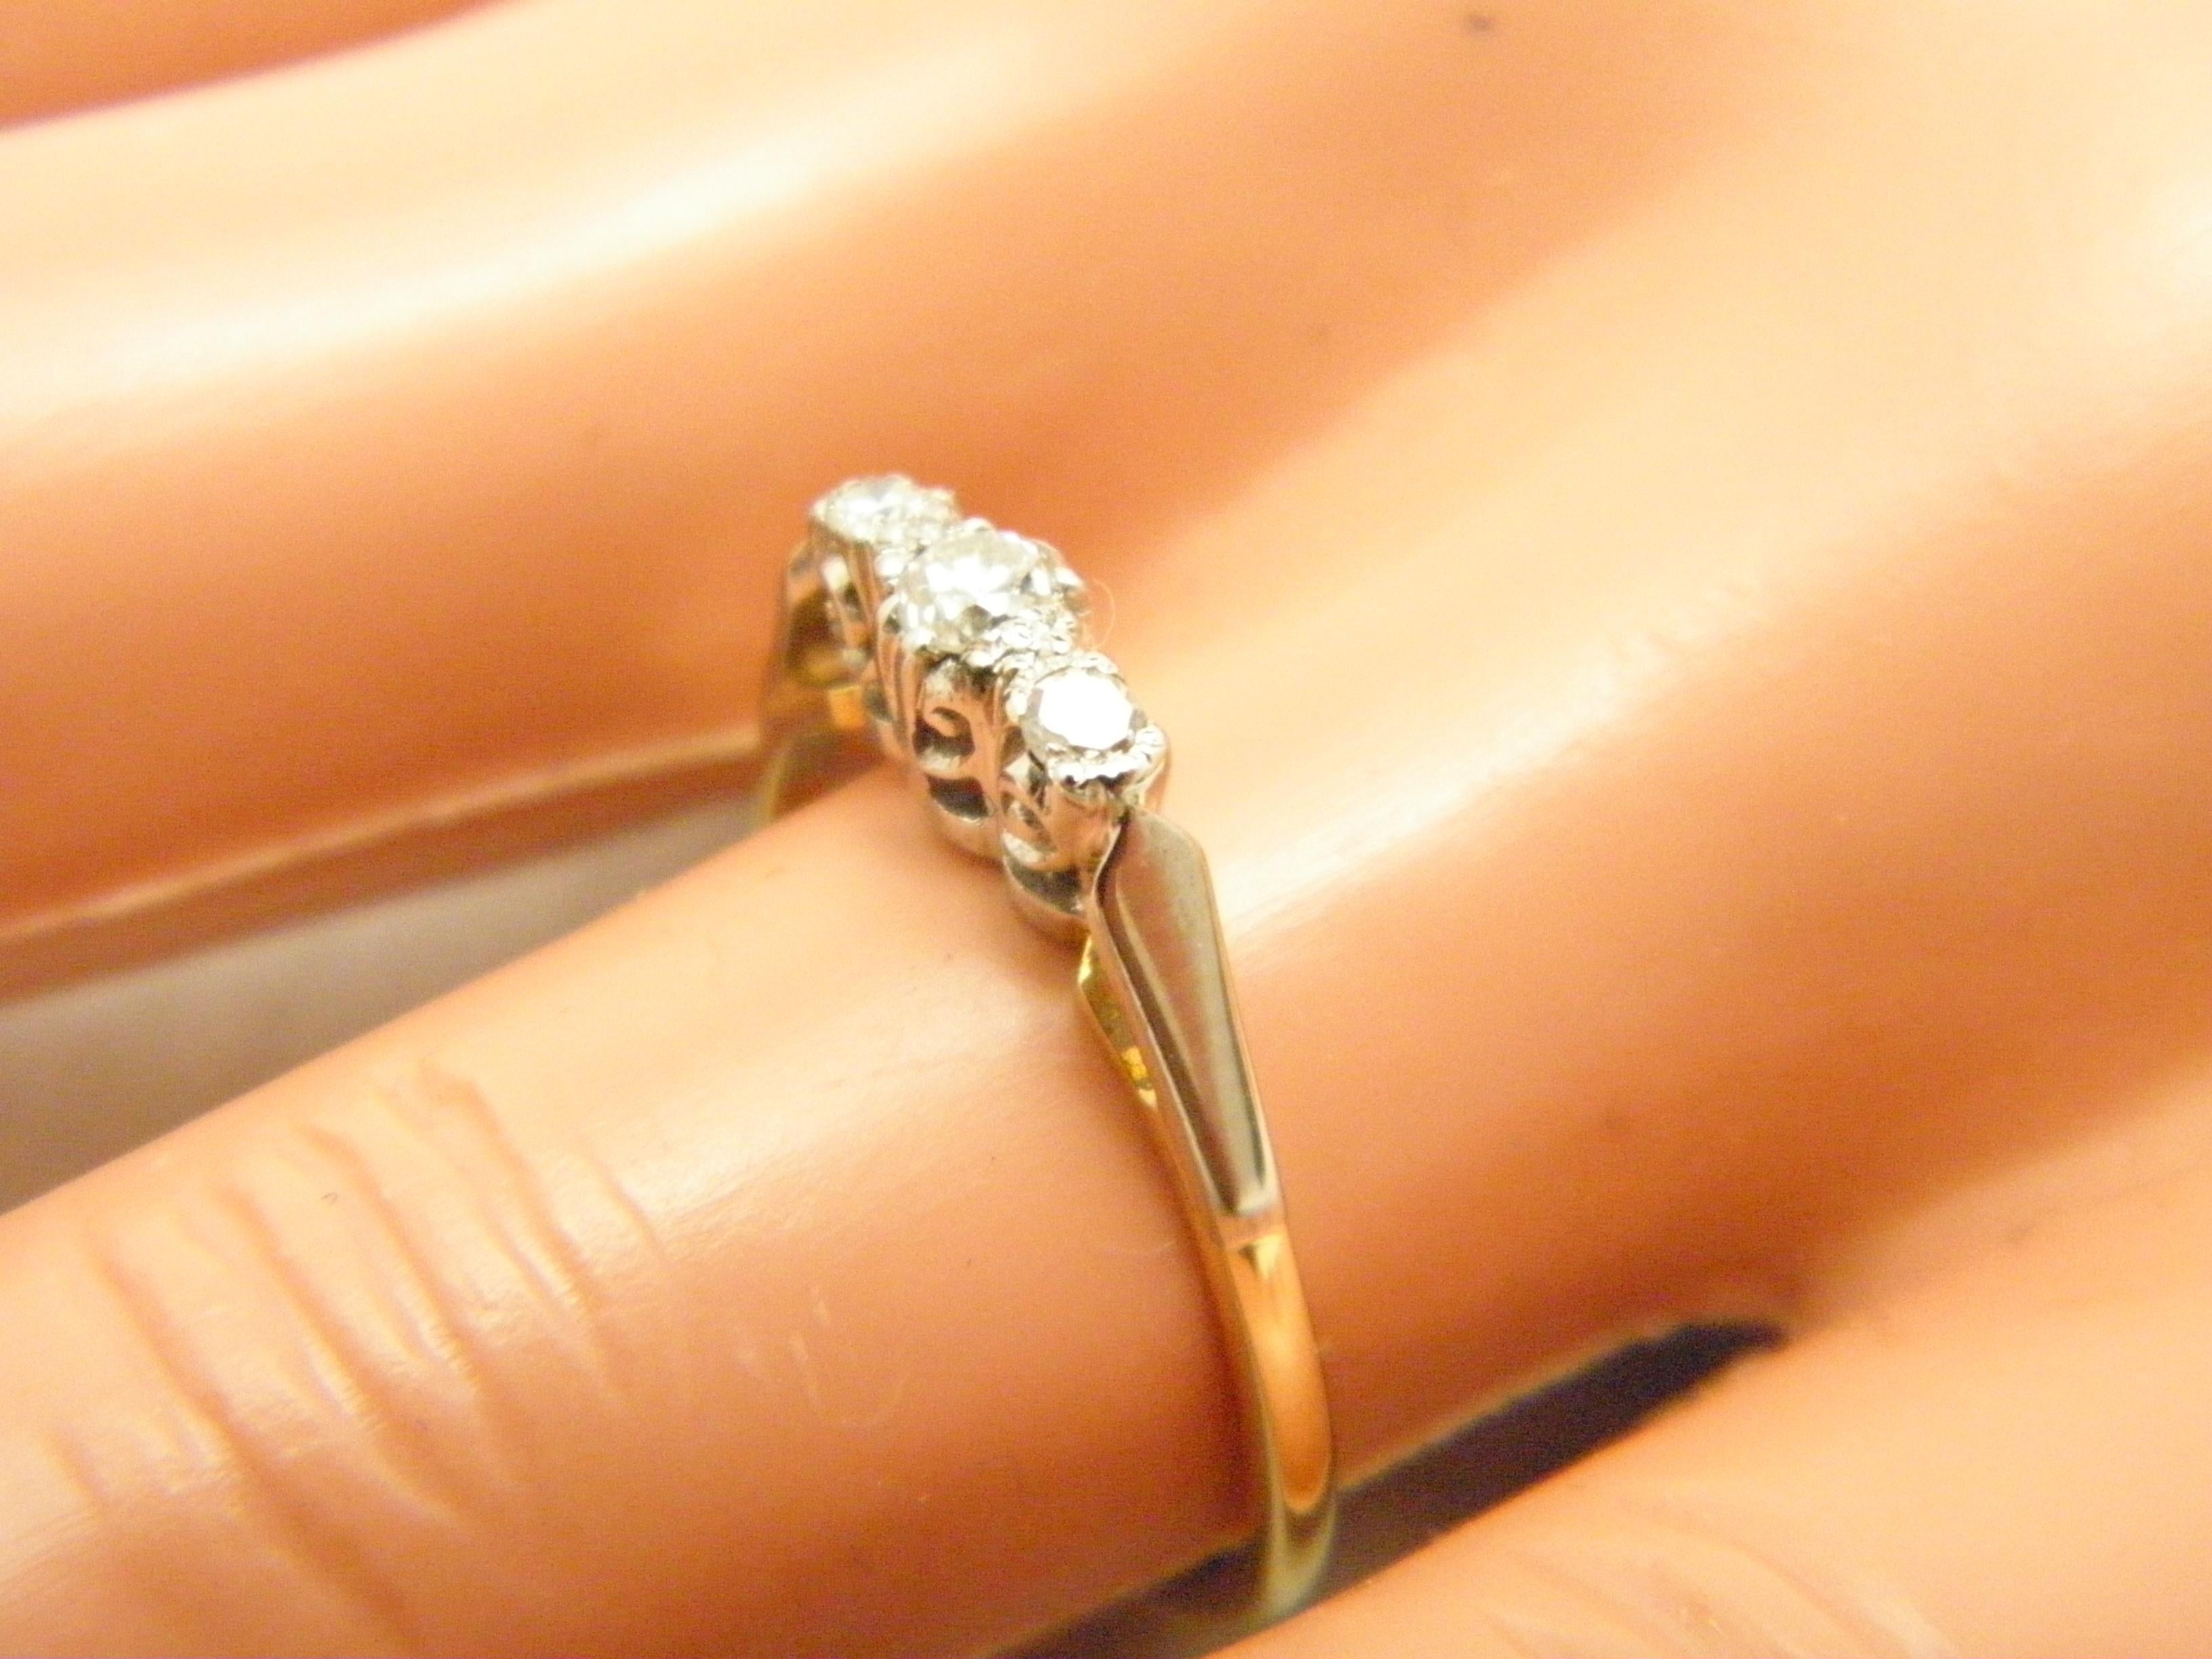 Antique 18ct Gold Platinum Diamond Trilogy Engagement Ring Size L 6 750 950 For Sale 3